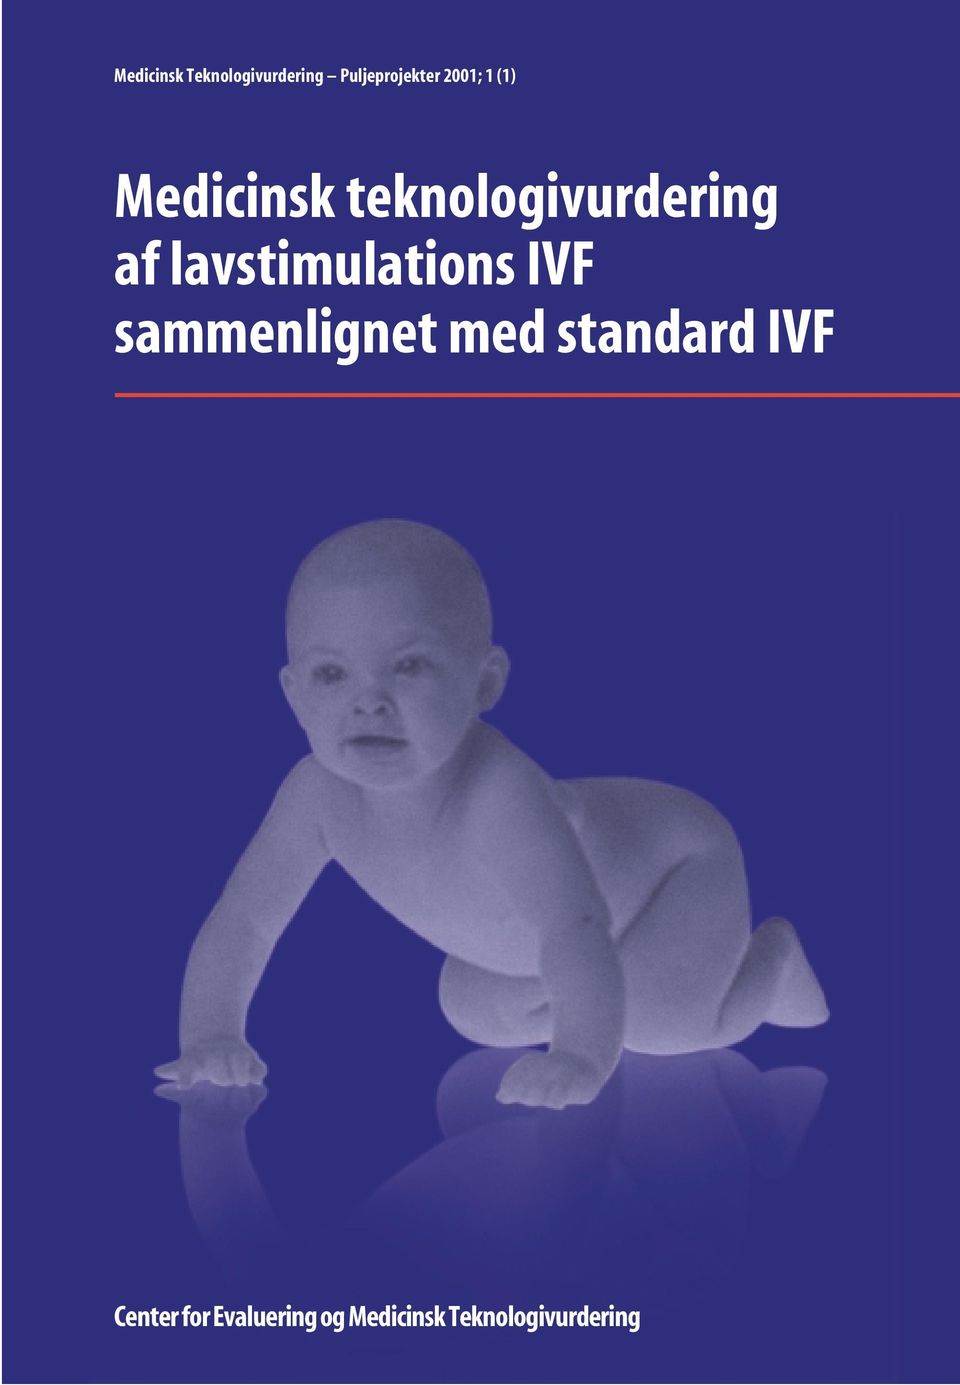 lavstimulations IVF sammenlignet med standard